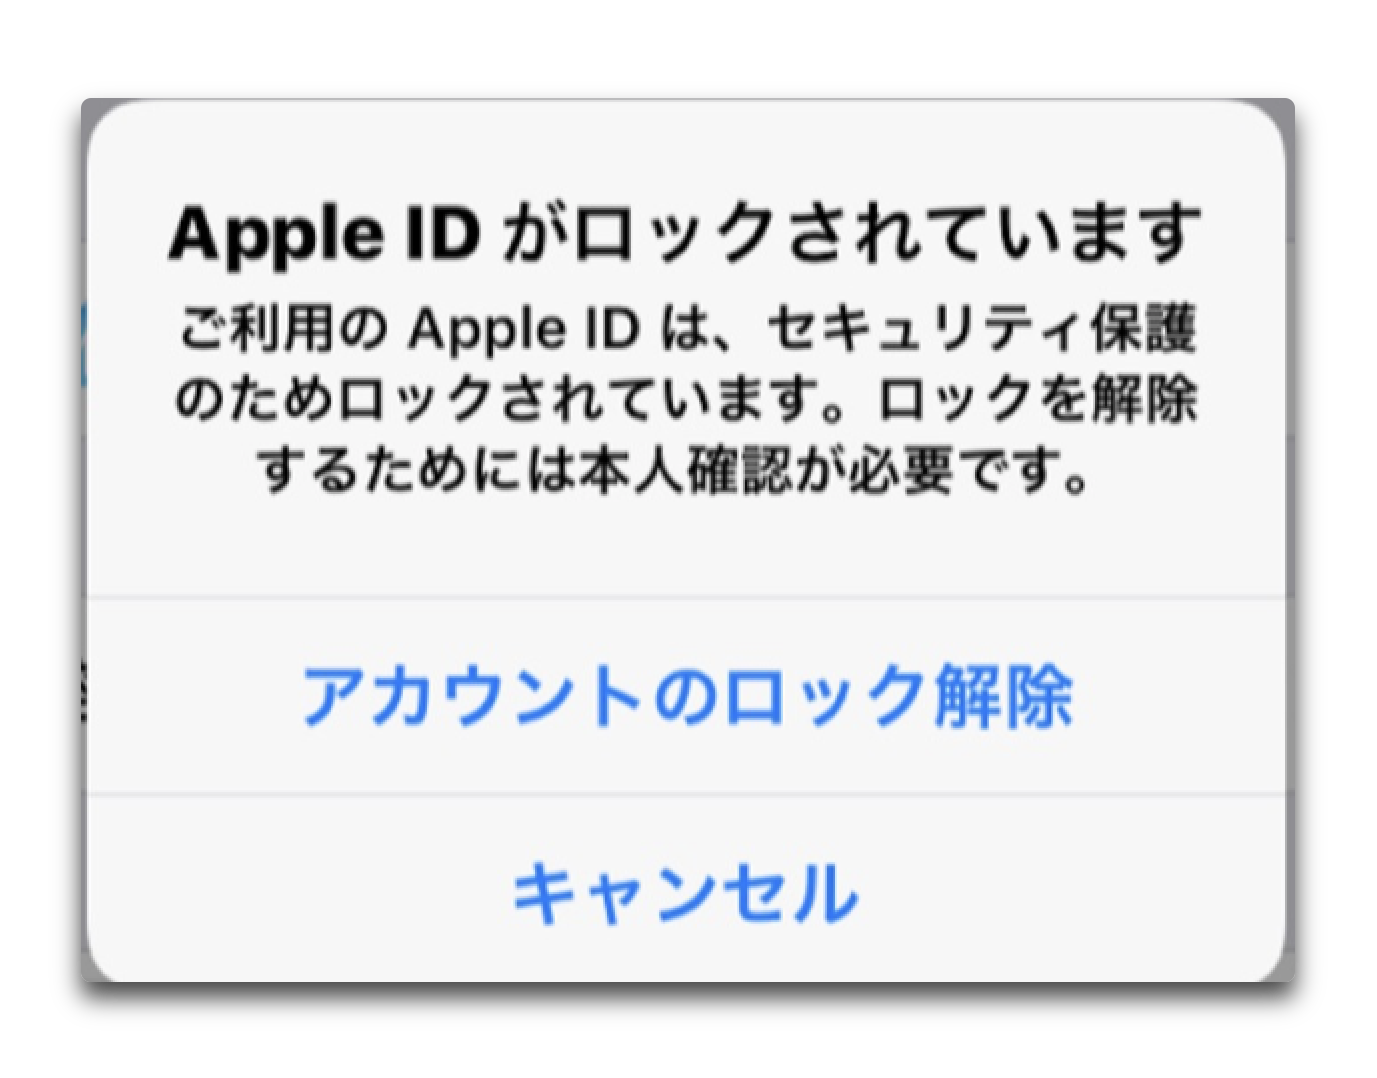 iPhoneのユーザーは「Apple IDアカウントがロックされています」との不可解な報告が多く寄せられている